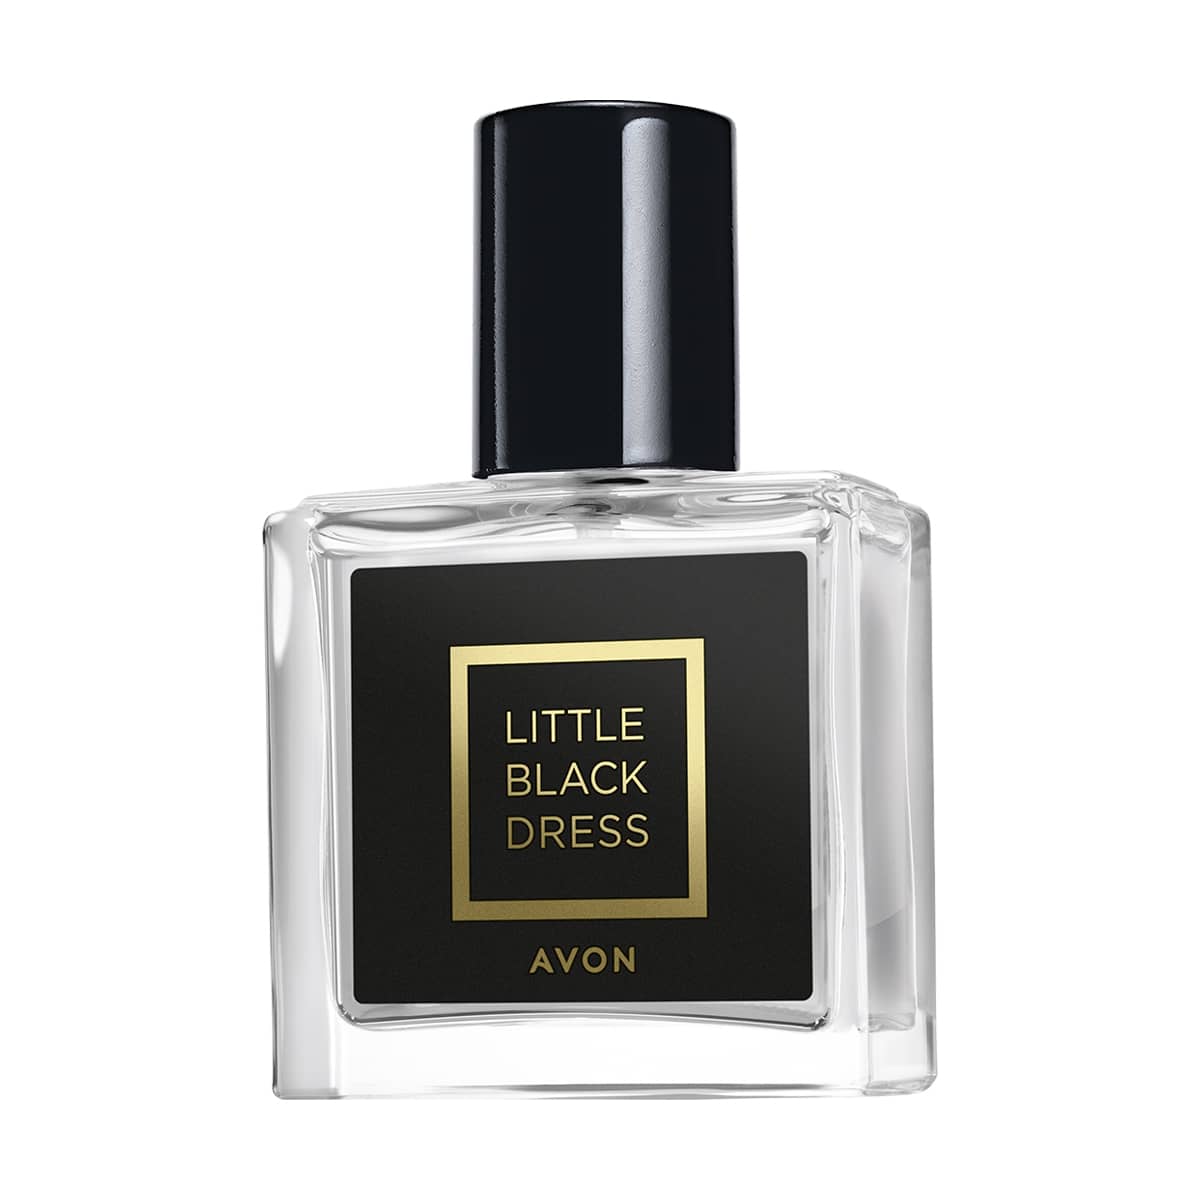 Avon Little Black Dress Eau de Parfum Travel Size - 30ml